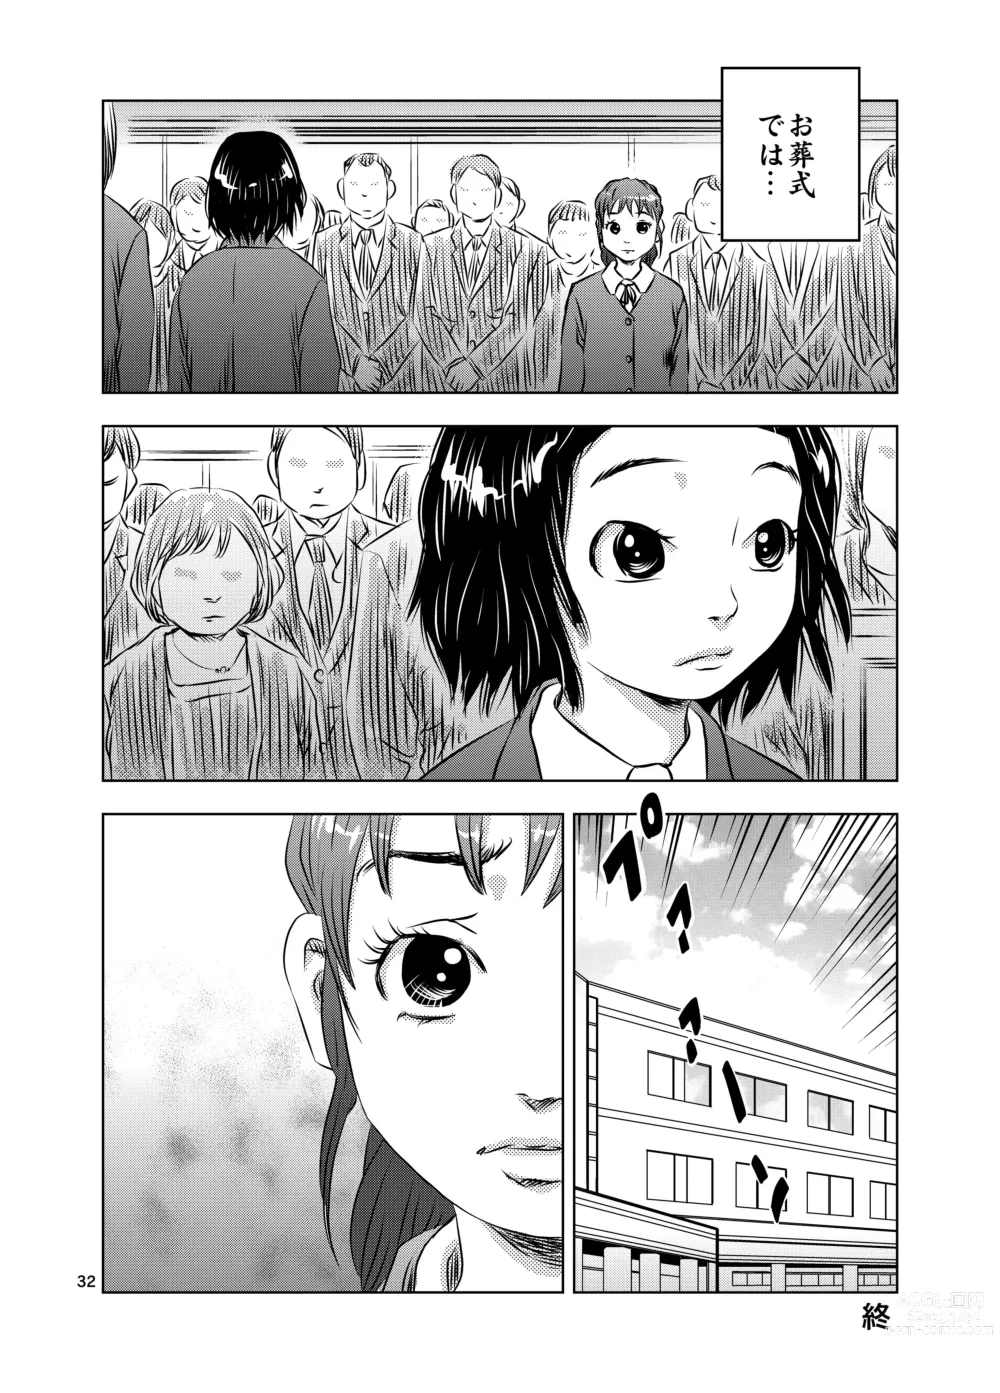 Page 32 of doujinshi Itoko no Aoi-chan